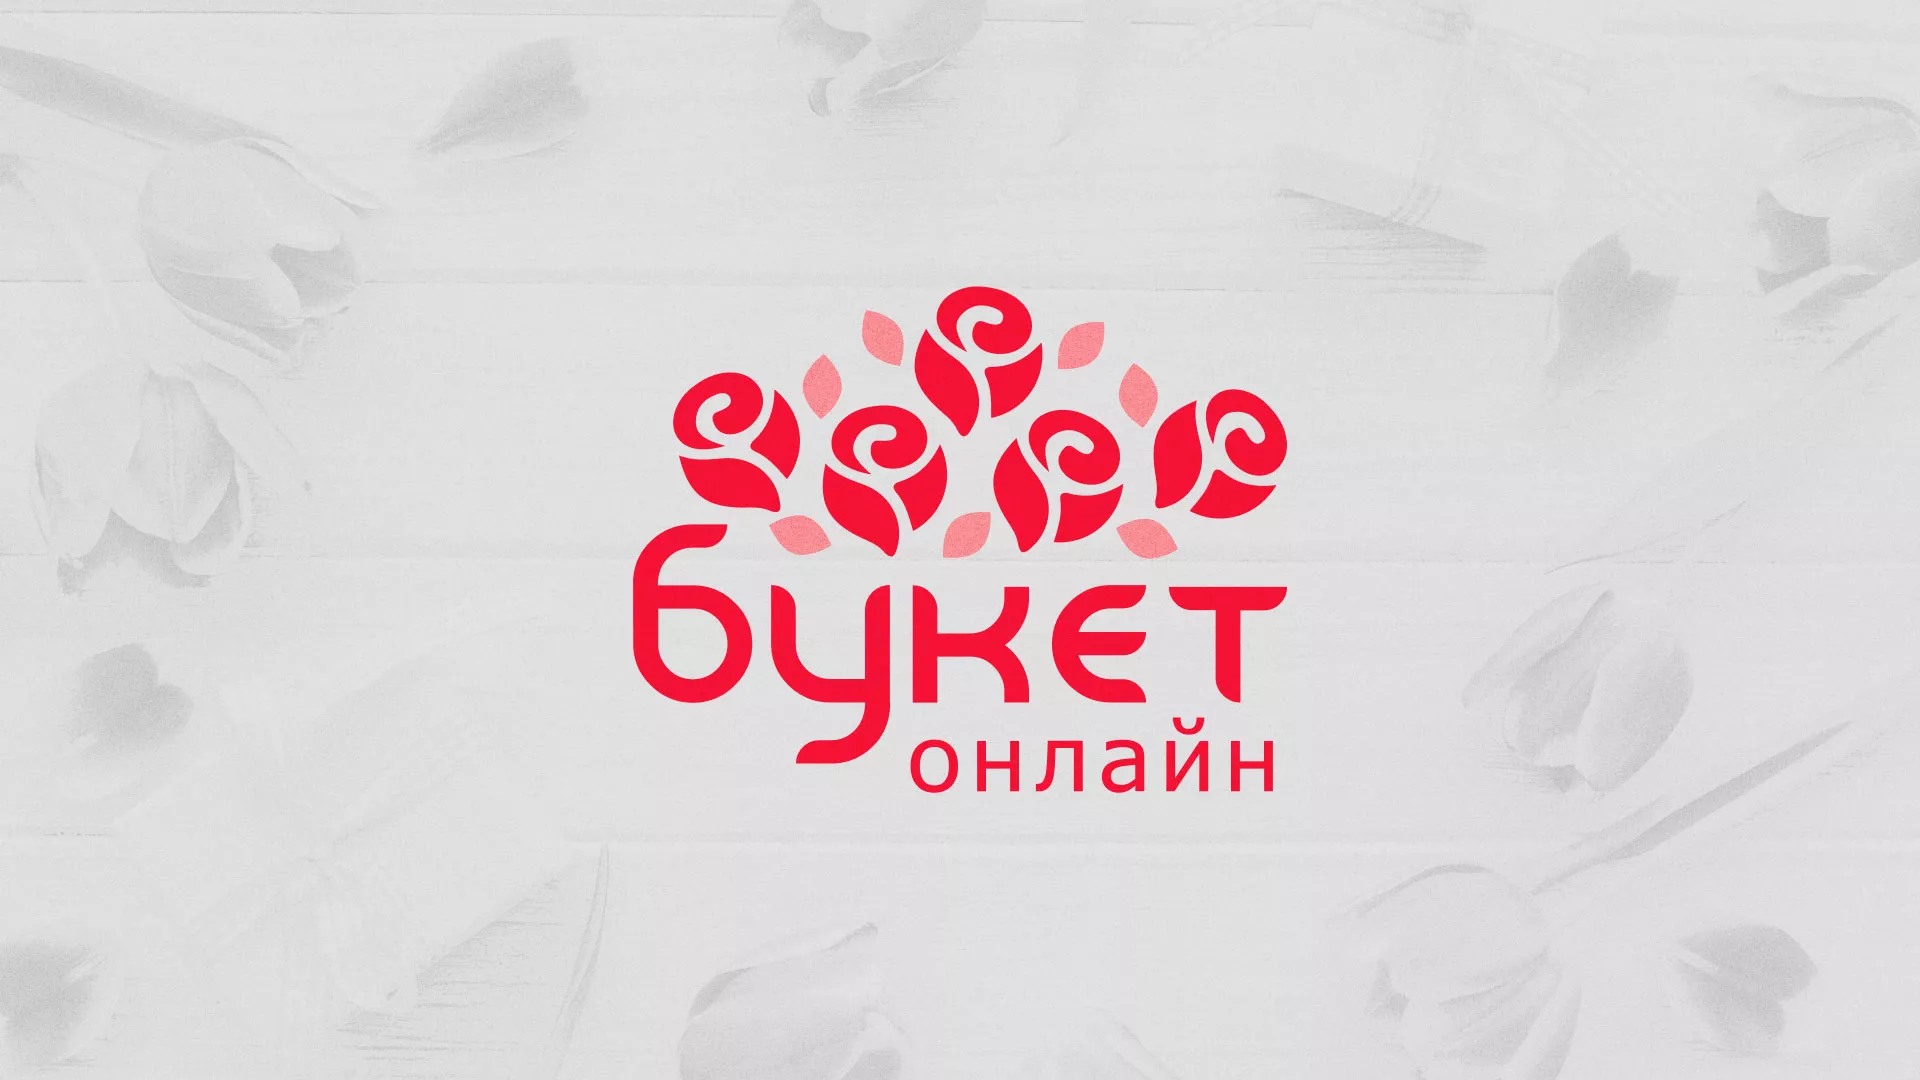 Создание интернет-магазина «Букет-онлайн» по цветам в Дивногорске